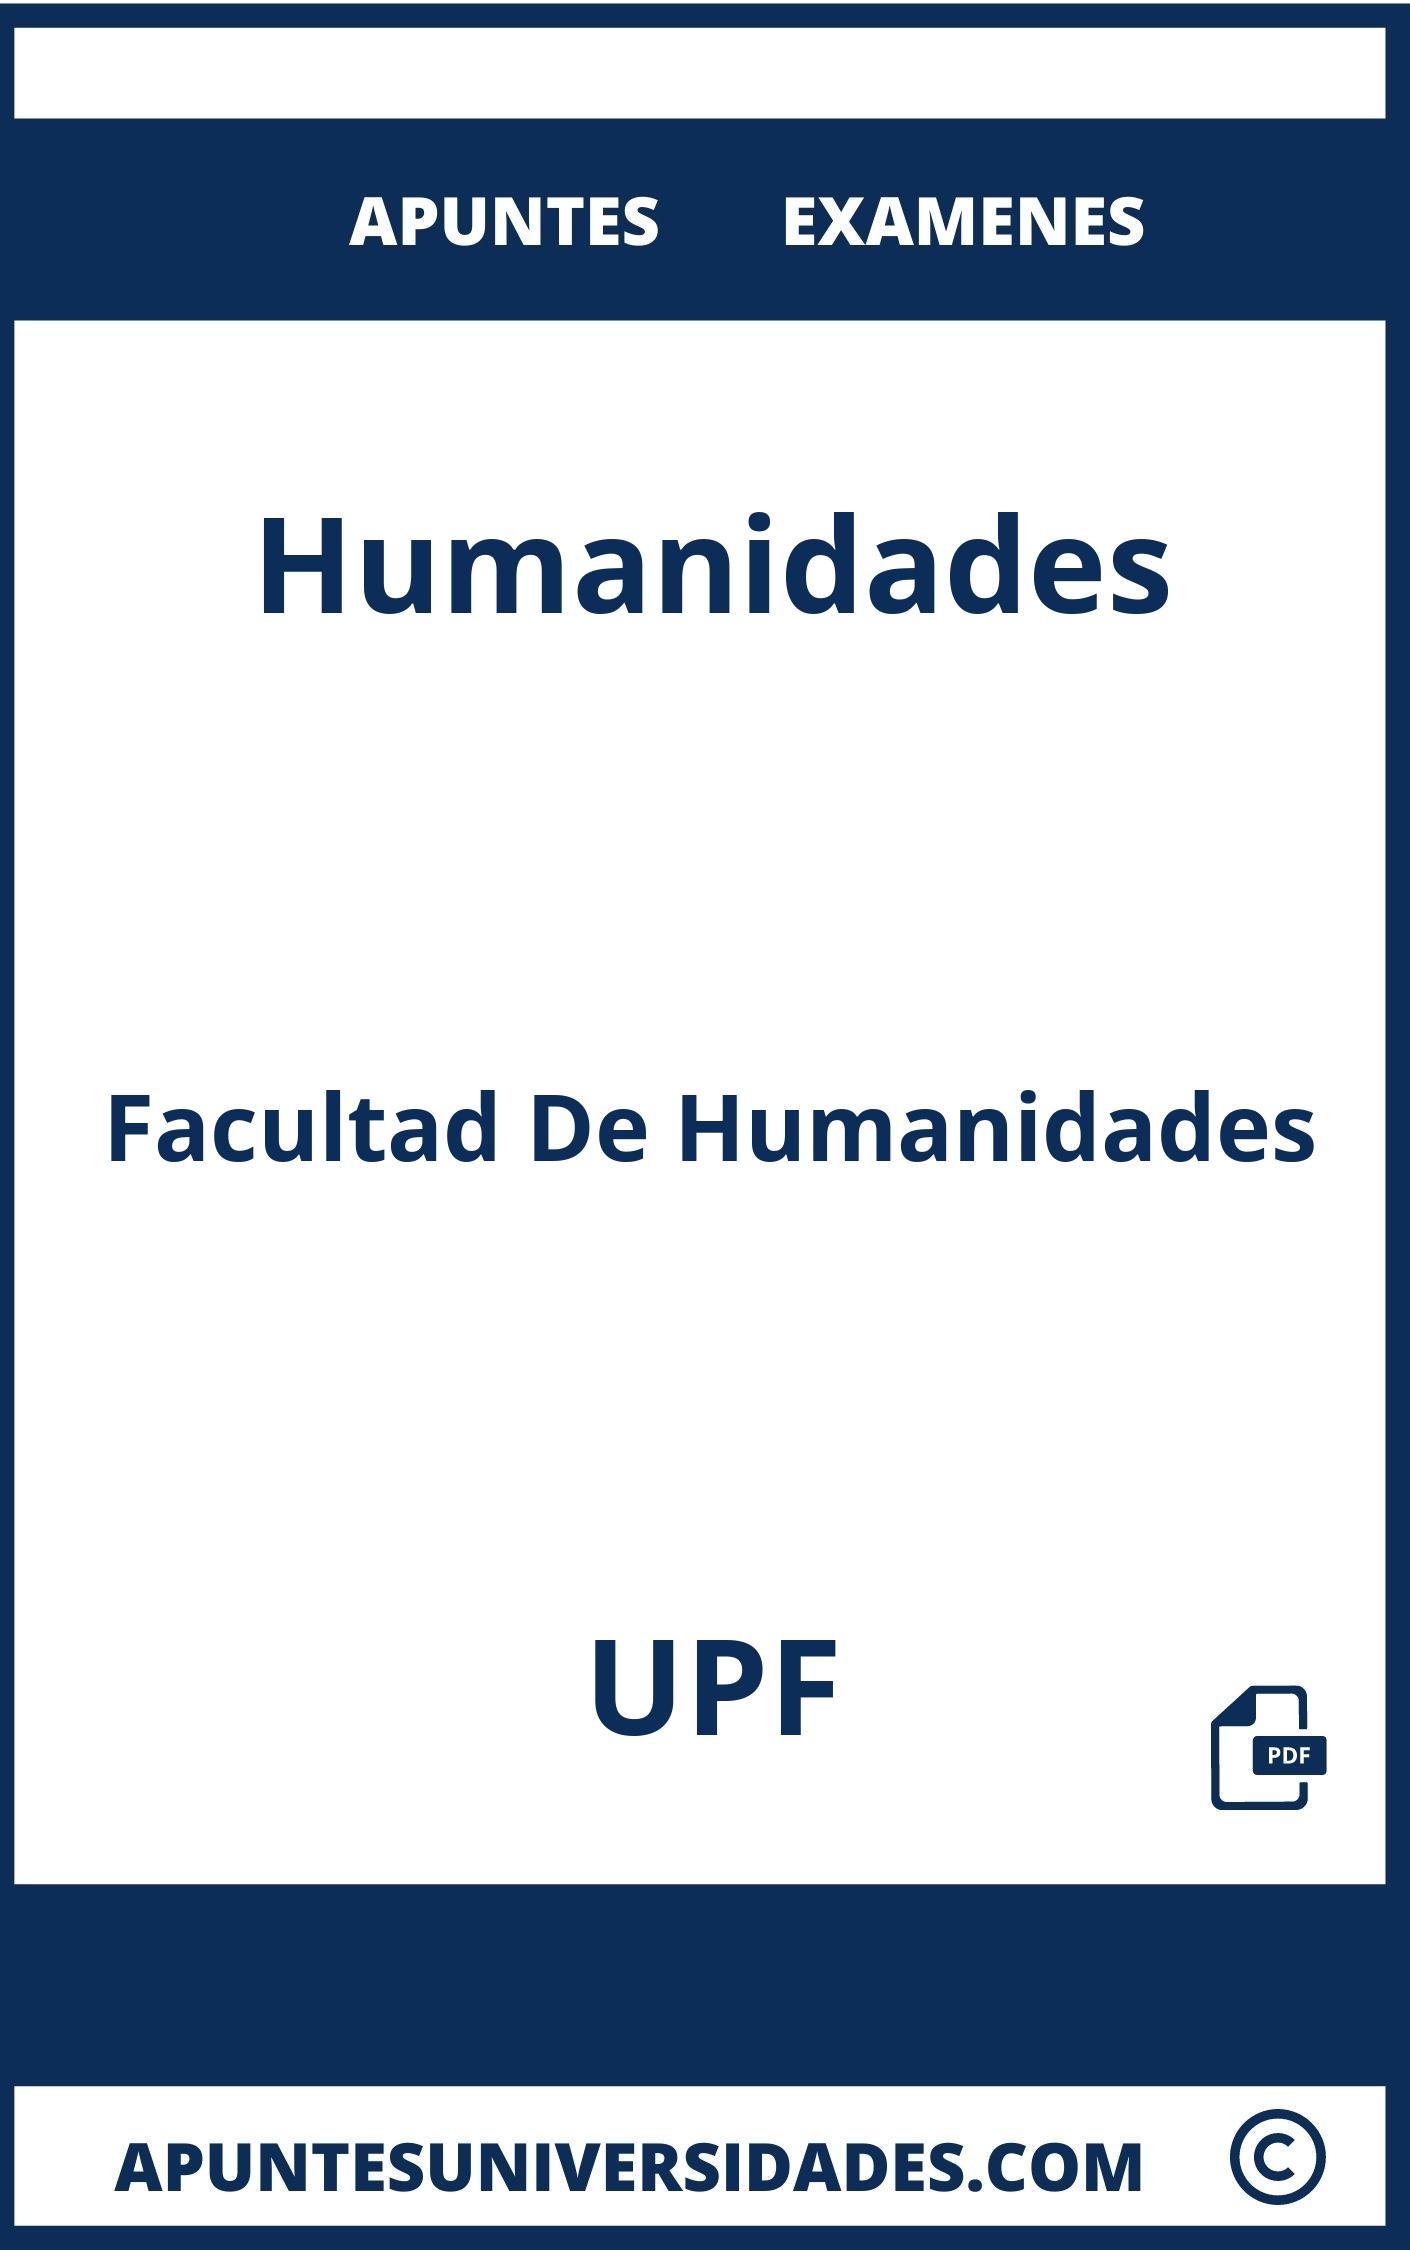 Apuntes Humanidades UPF y Examenes